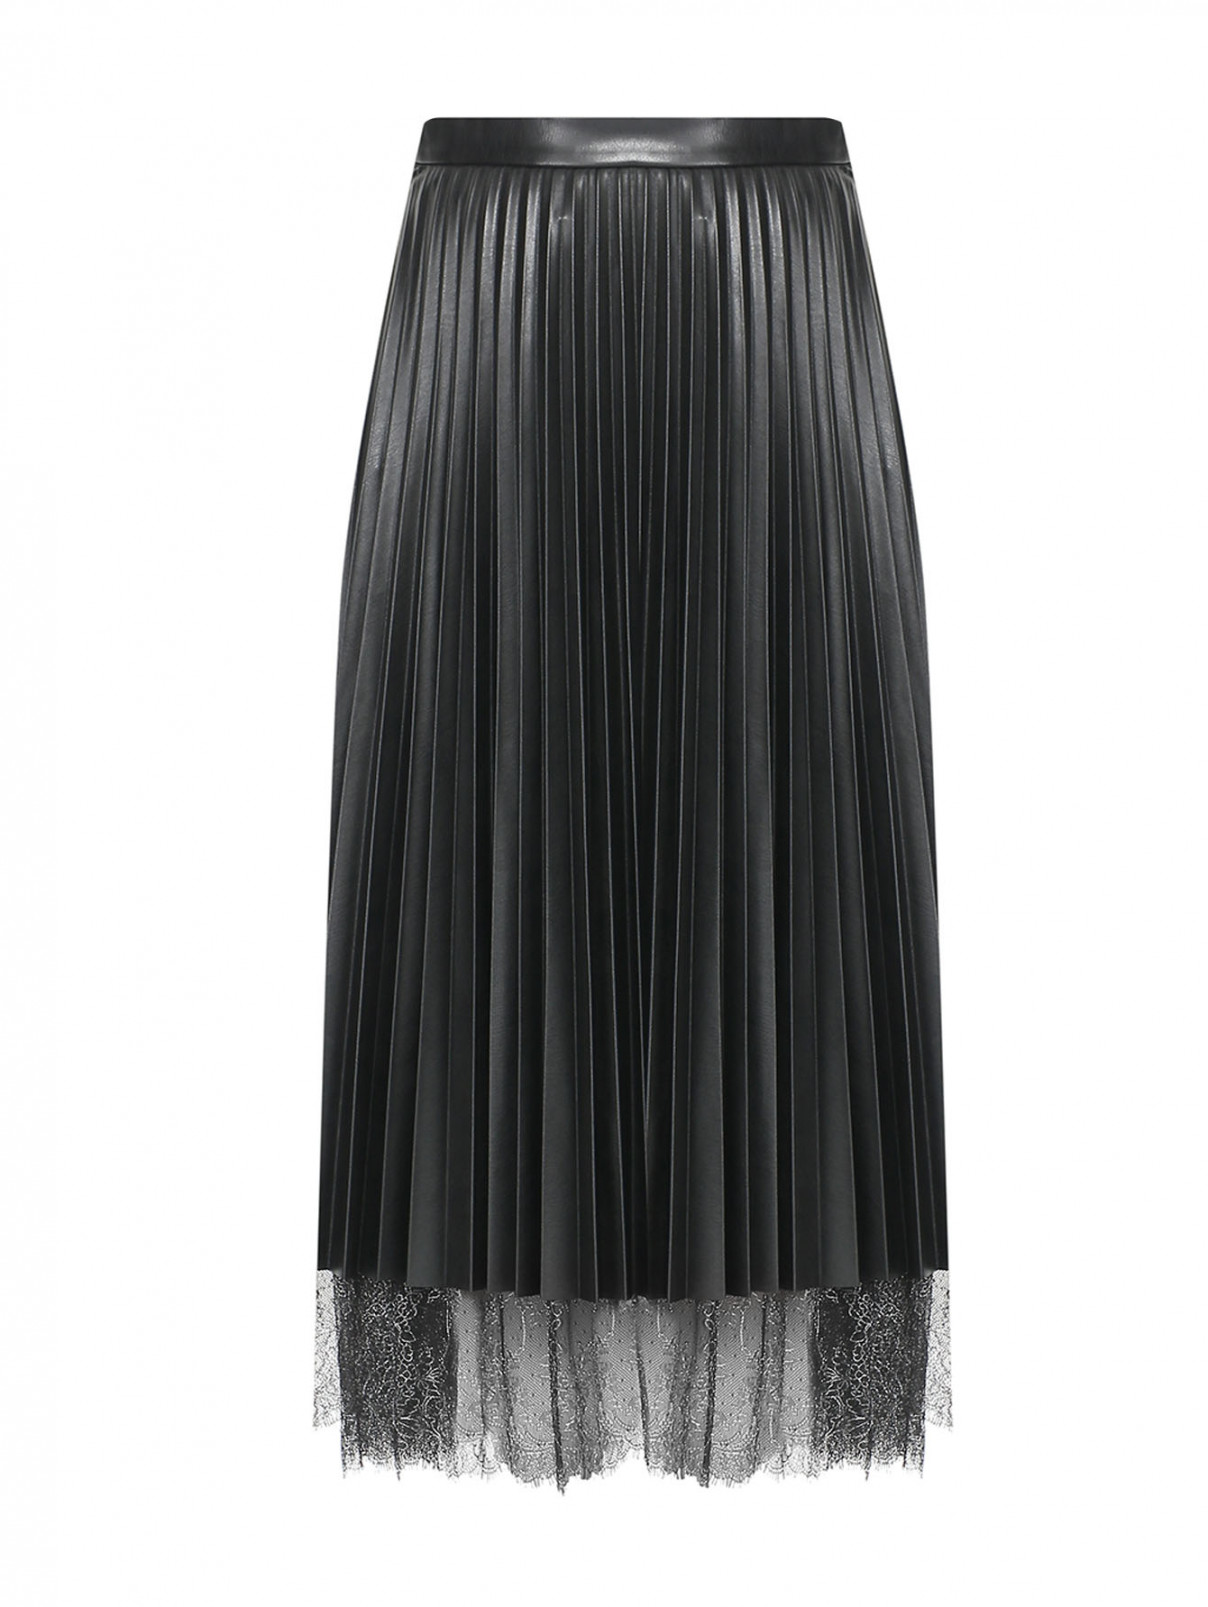 Плиссированная юбка-миди с кружевной отделкой Marina Rinaldi  –  Общий вид  – Цвет:  Черный